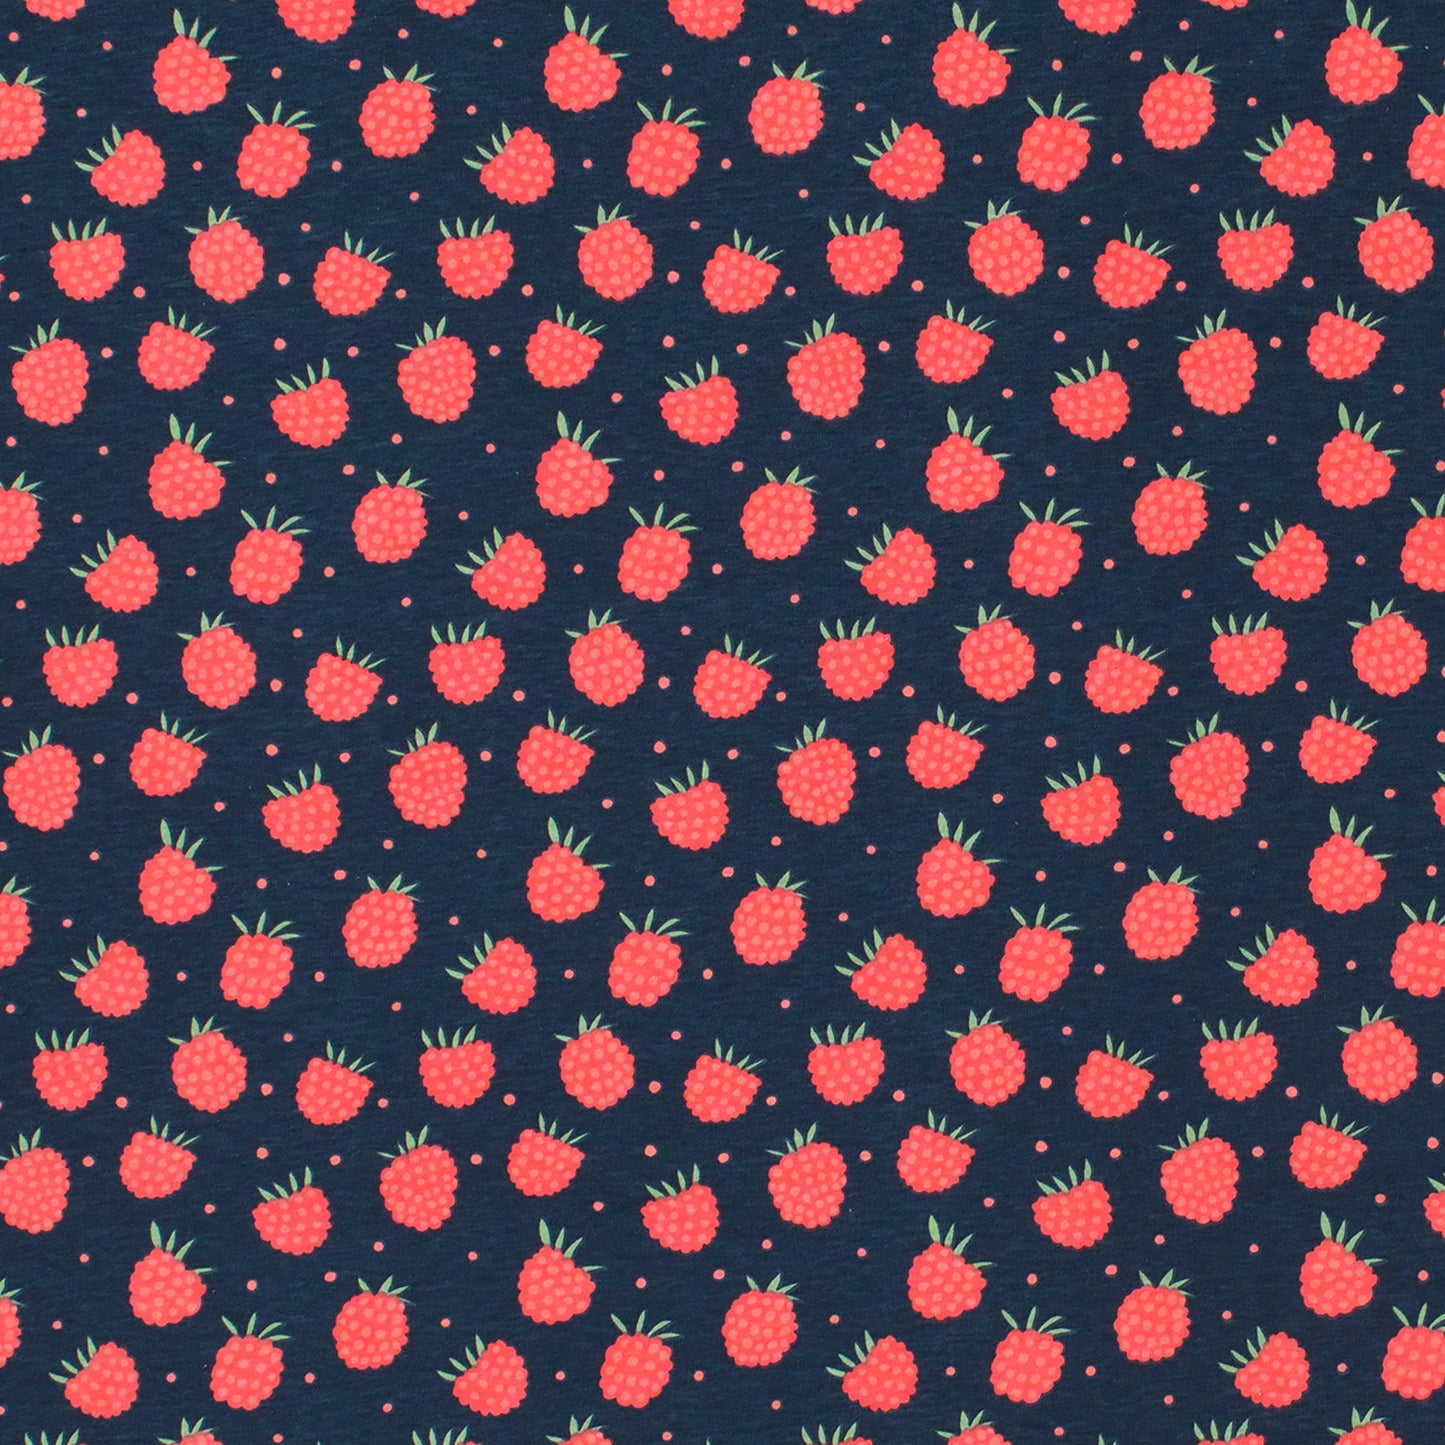 Bloomers - Raspberries Night Sky